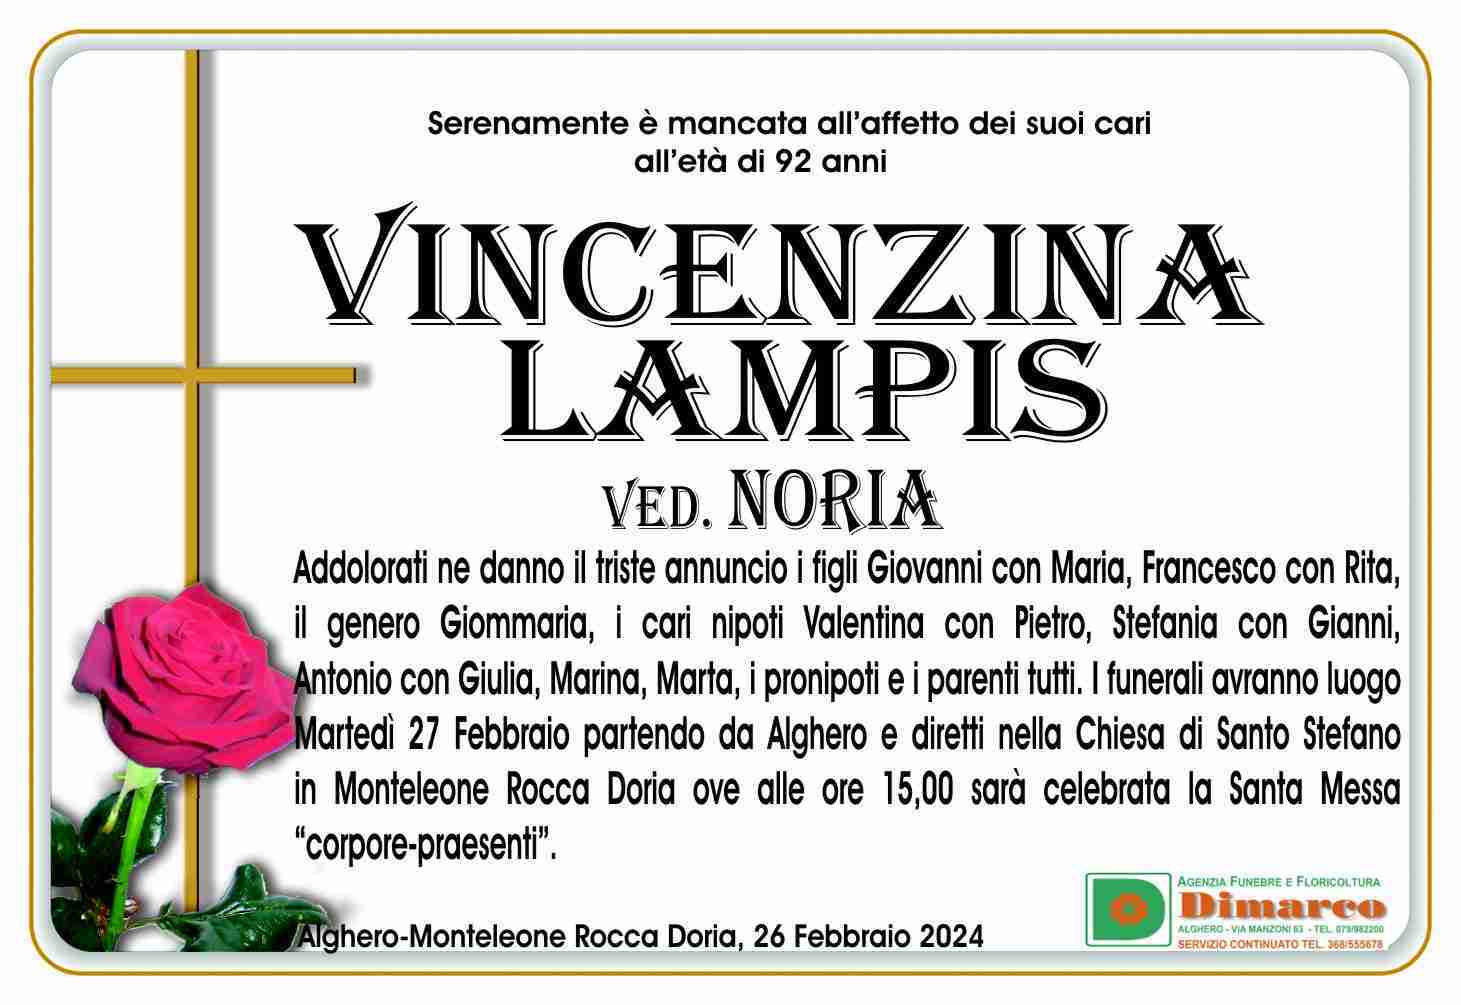 Lampis Vincenzina